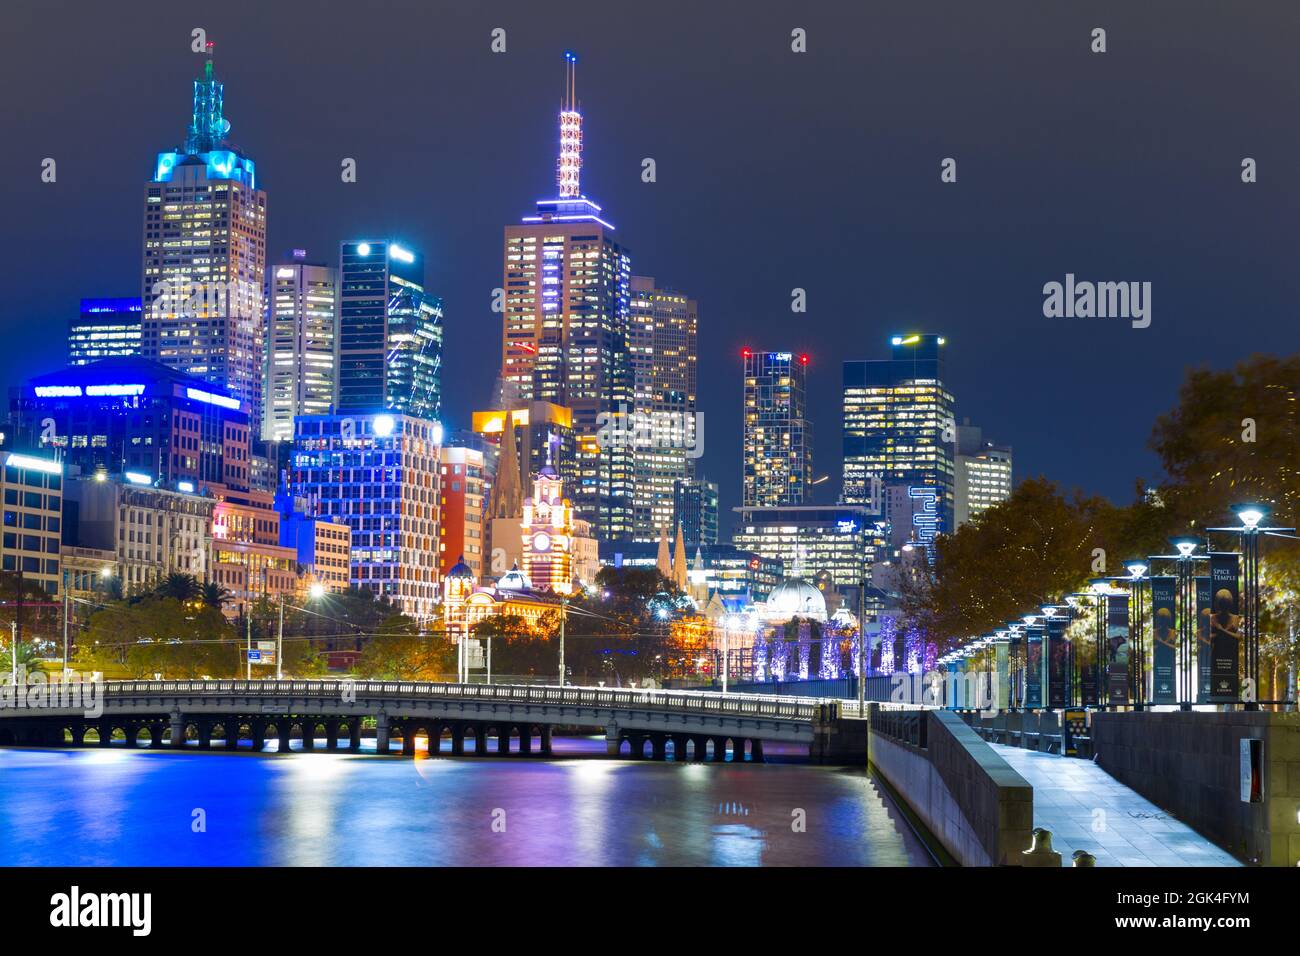 Las principales atracciones de Melbourne, Australia, incluidos los edificios del distrito central de negocios, el río Yarra y Southbank (a la derecha), vistas por la noche. Foto de stock